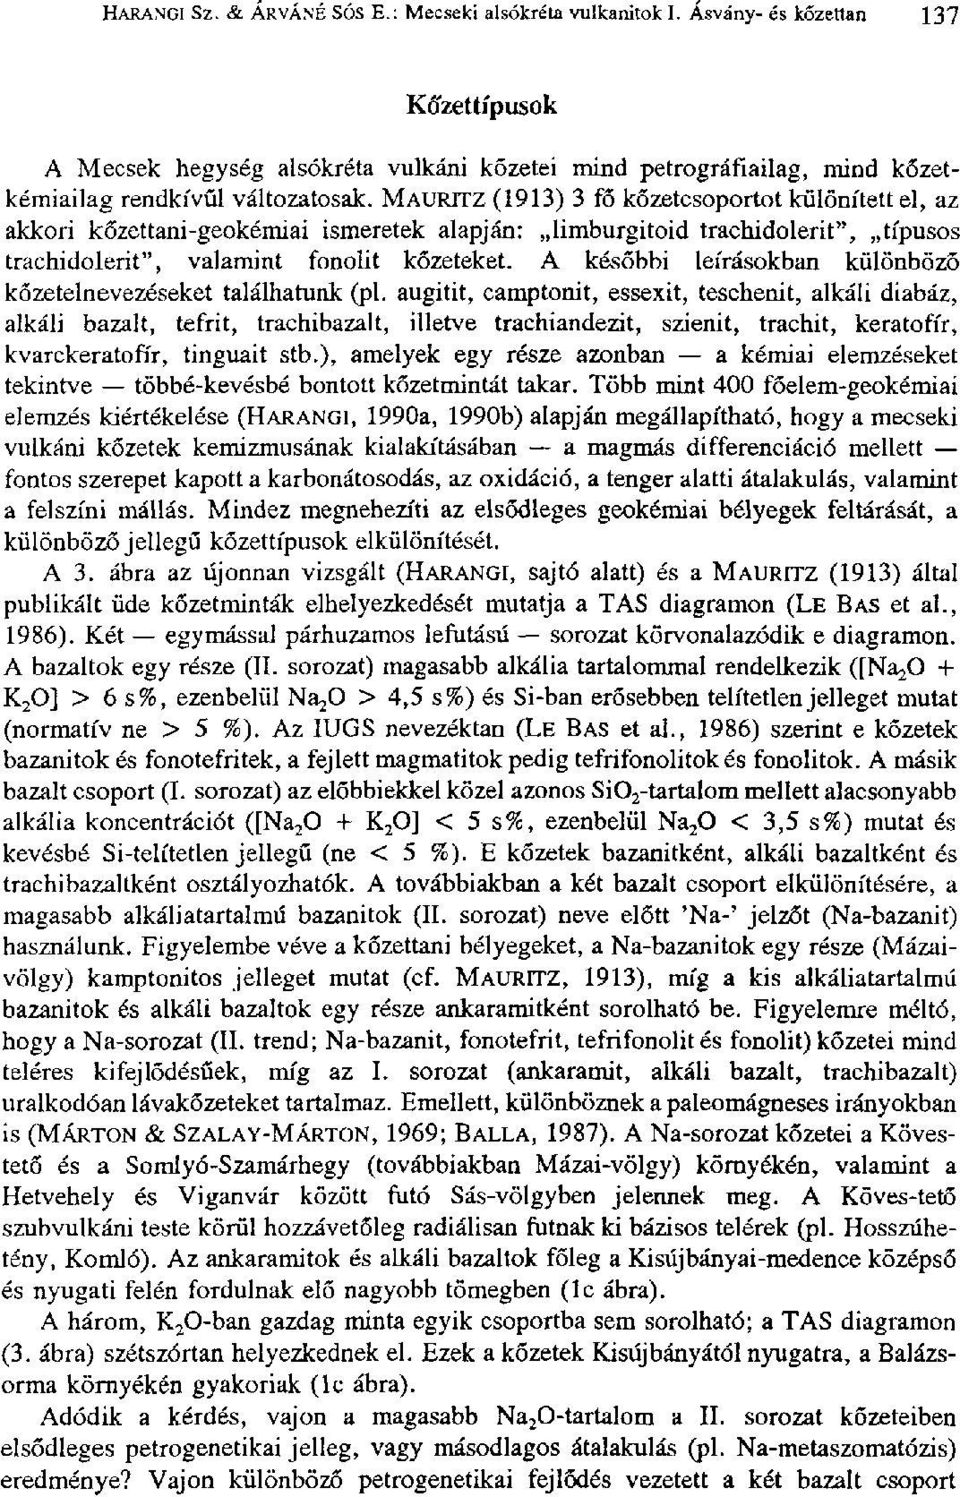 MAUPJTZ (1913) 3 fő kőzetcsoportot különített el, az akkori kőzettani-geokémiai ismeretek alapján: limburgitoid trachidolerit", típusos trachidolerit", valamint fonolit kőzeteket.